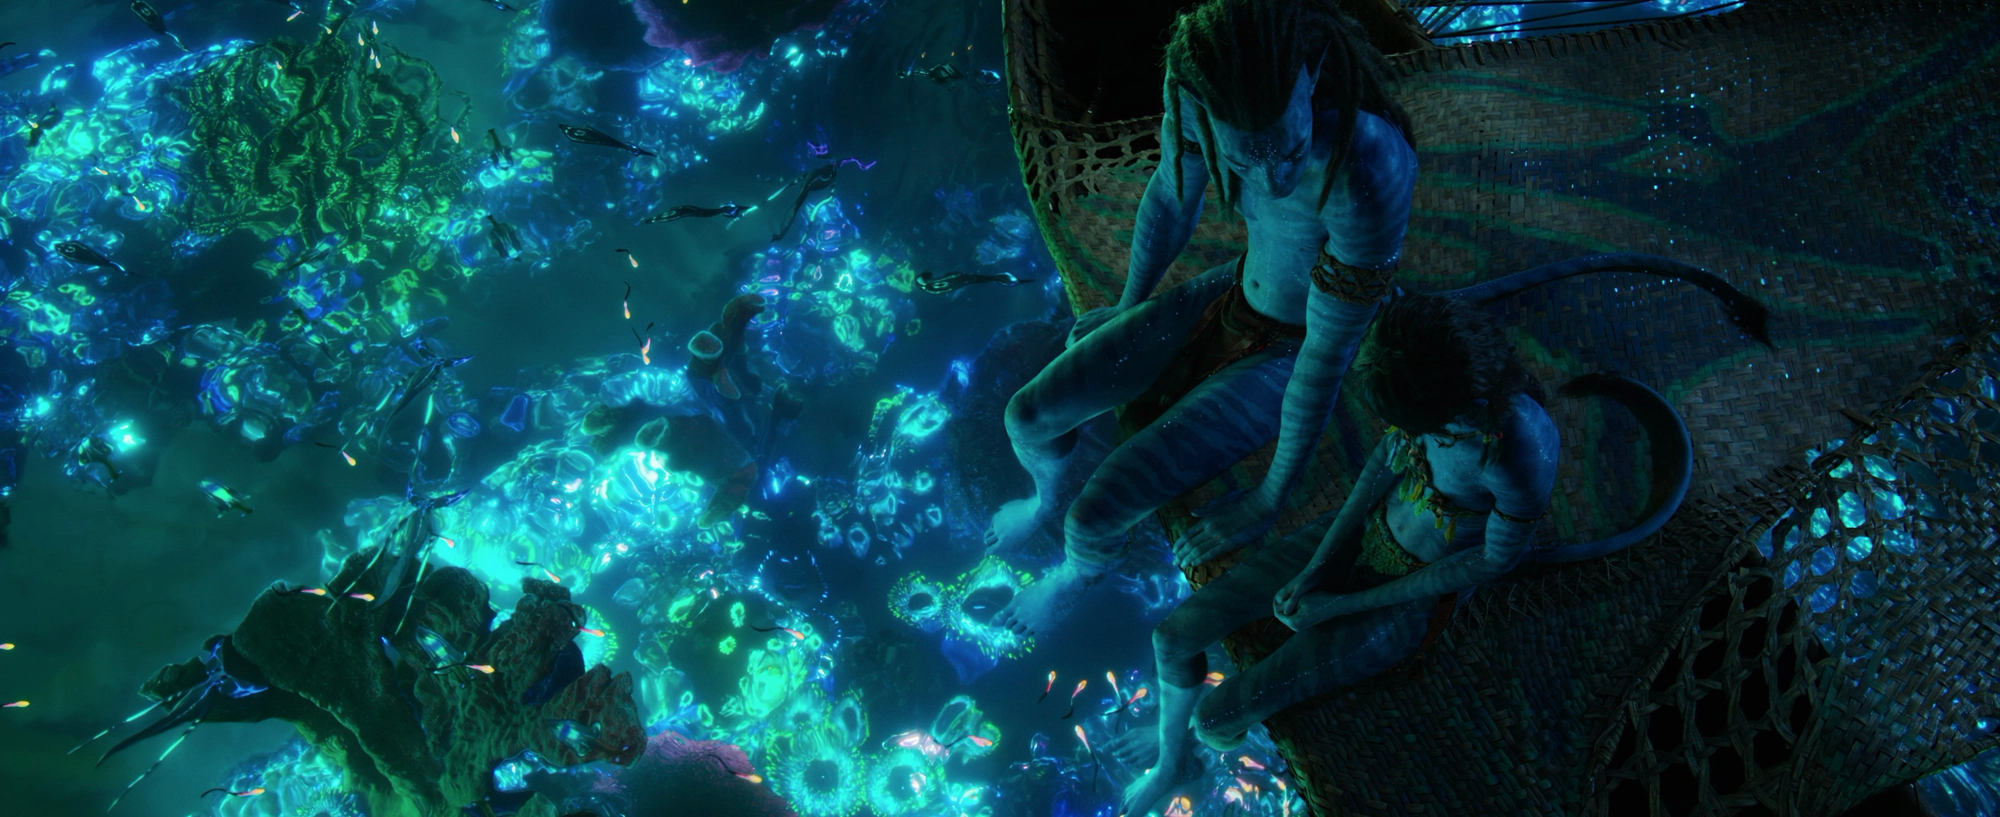 Avatar: The Way Of Water mới đích thực là kỳ quan của thế giới chứ không chỉ là phim ảnh - Ảnh 11.